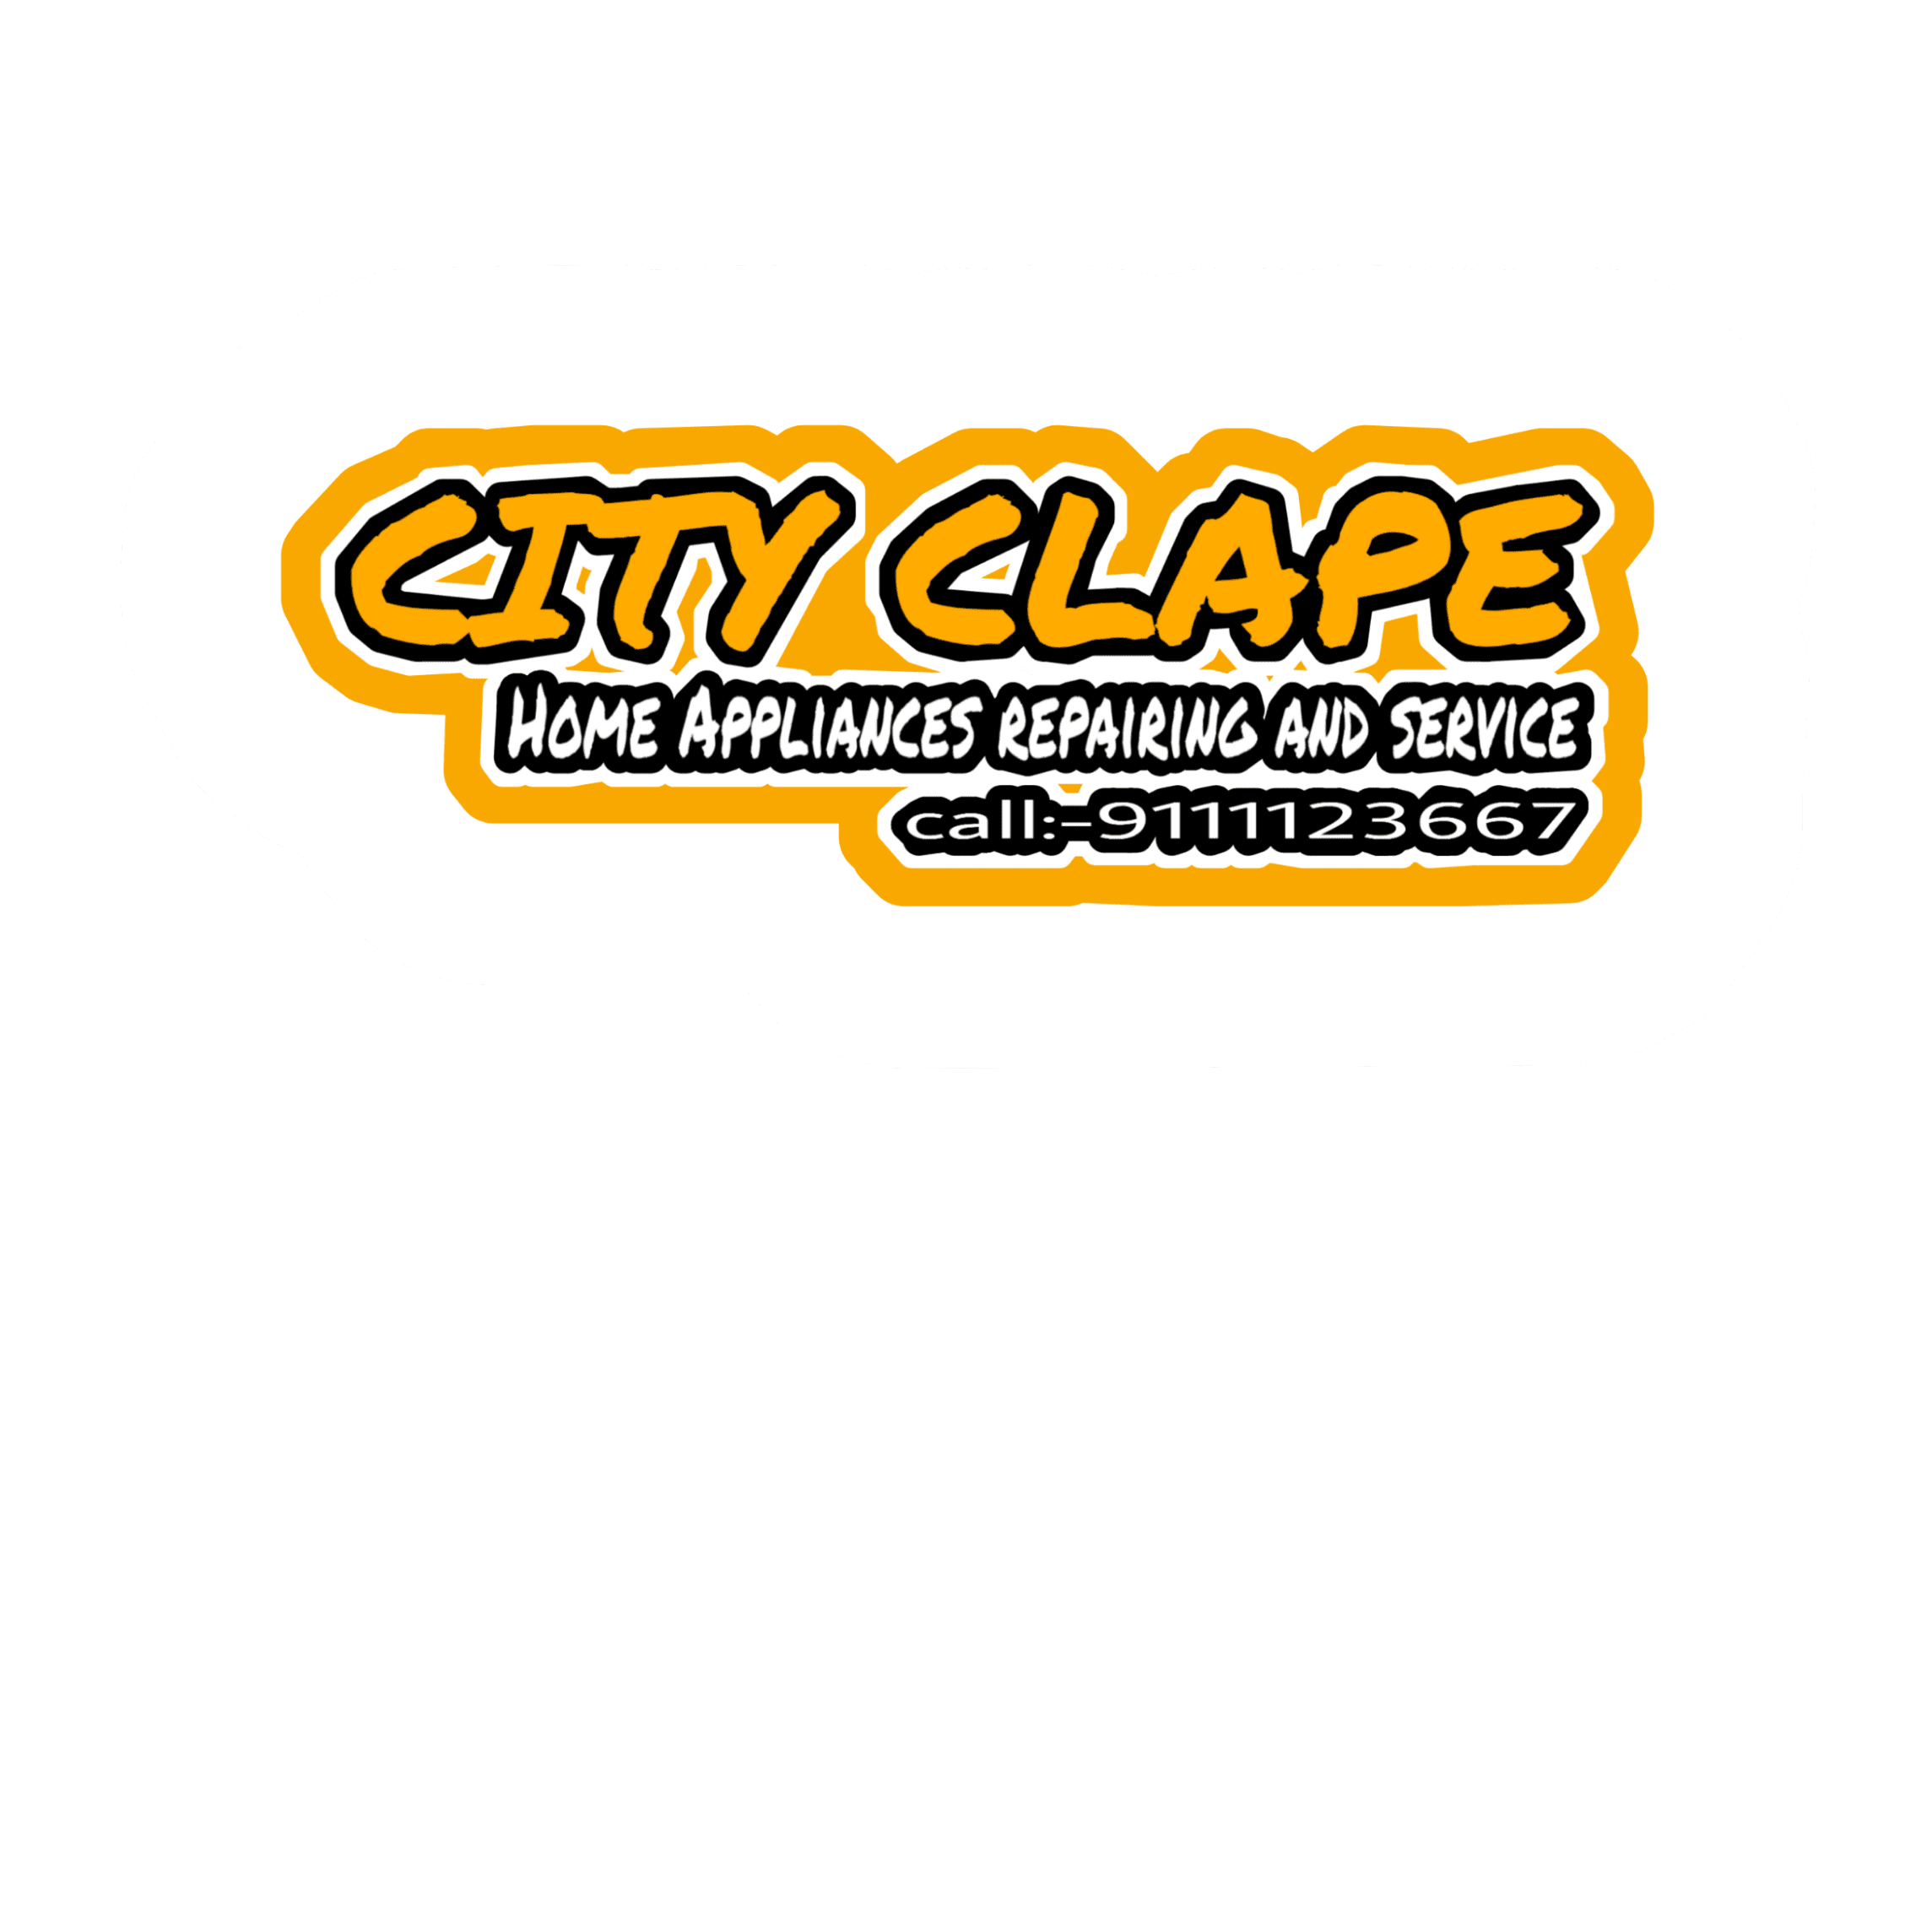 City Clape